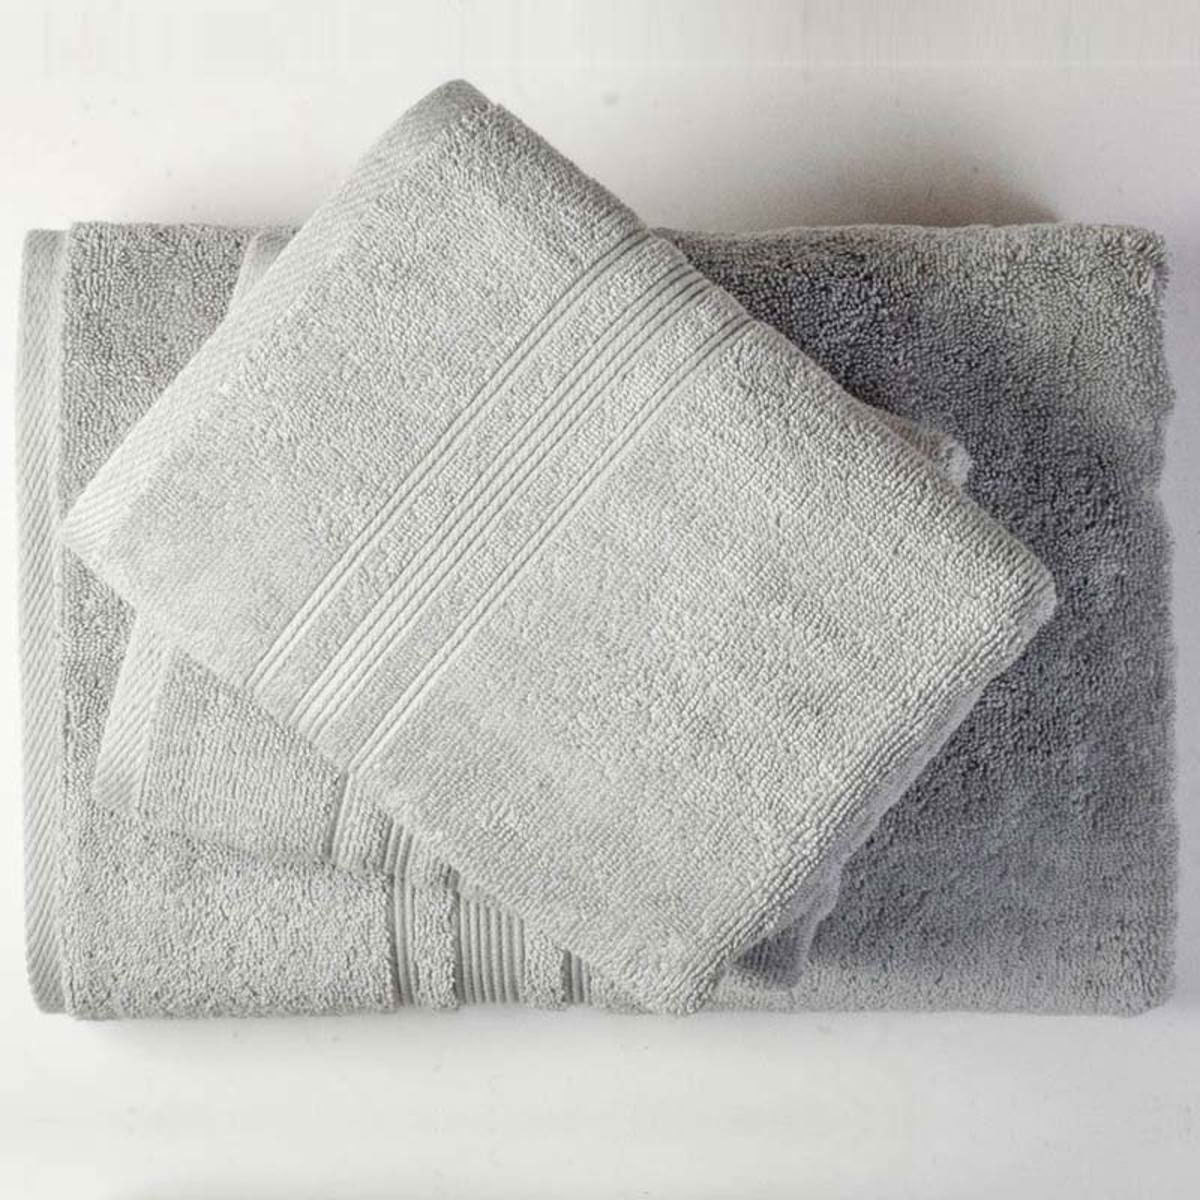 silver bath towels